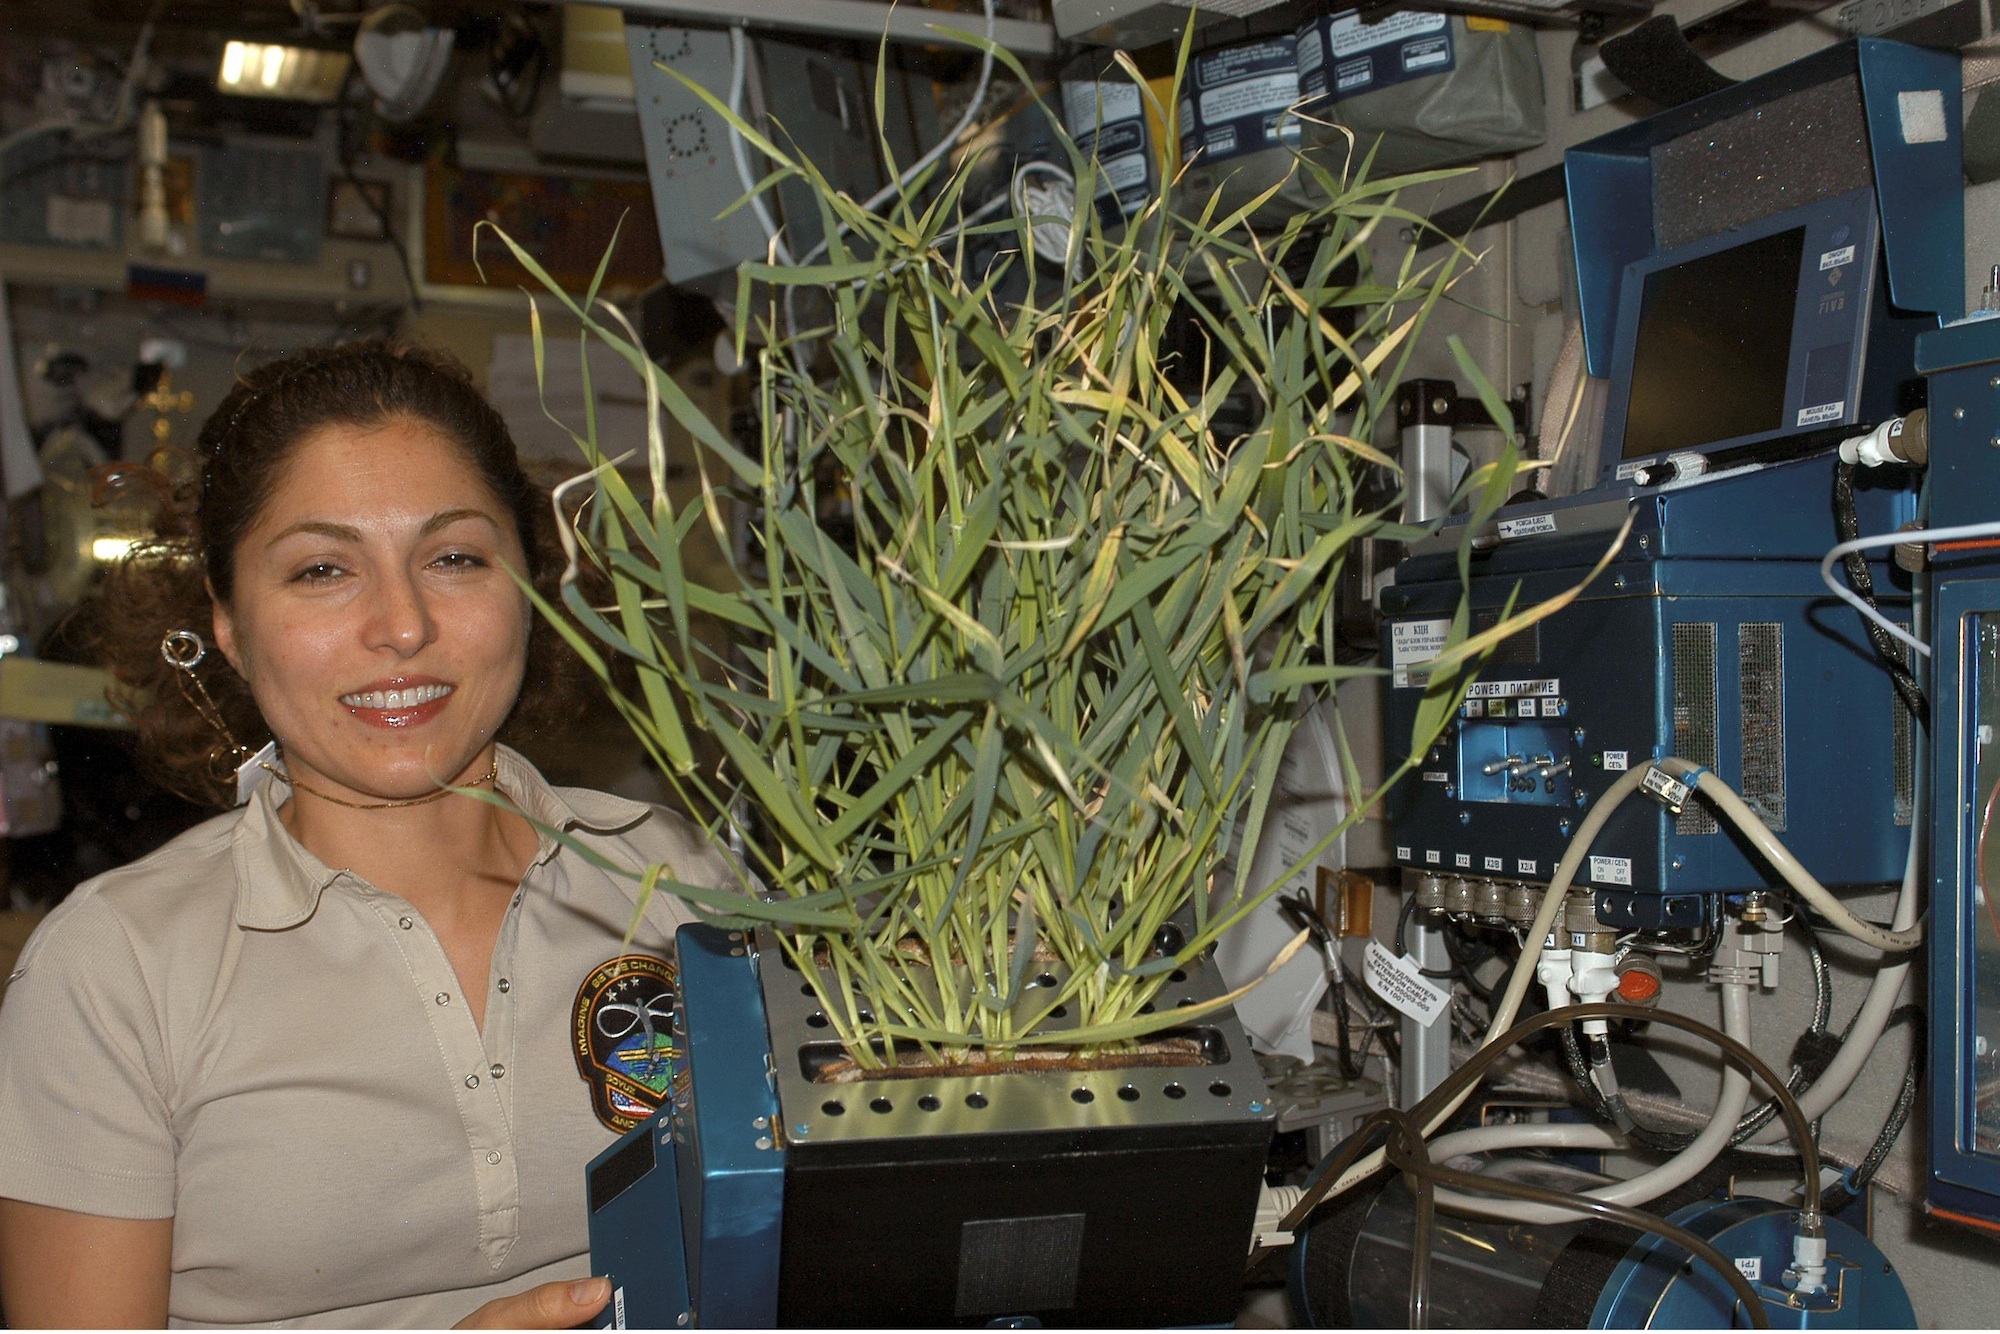 Опыты над растениями. Оранжерея Veggie МКС. Опыты с растениями на МКС (Международная Космическая станция). Космическая оранжерея МКС. Растения на космической станции.